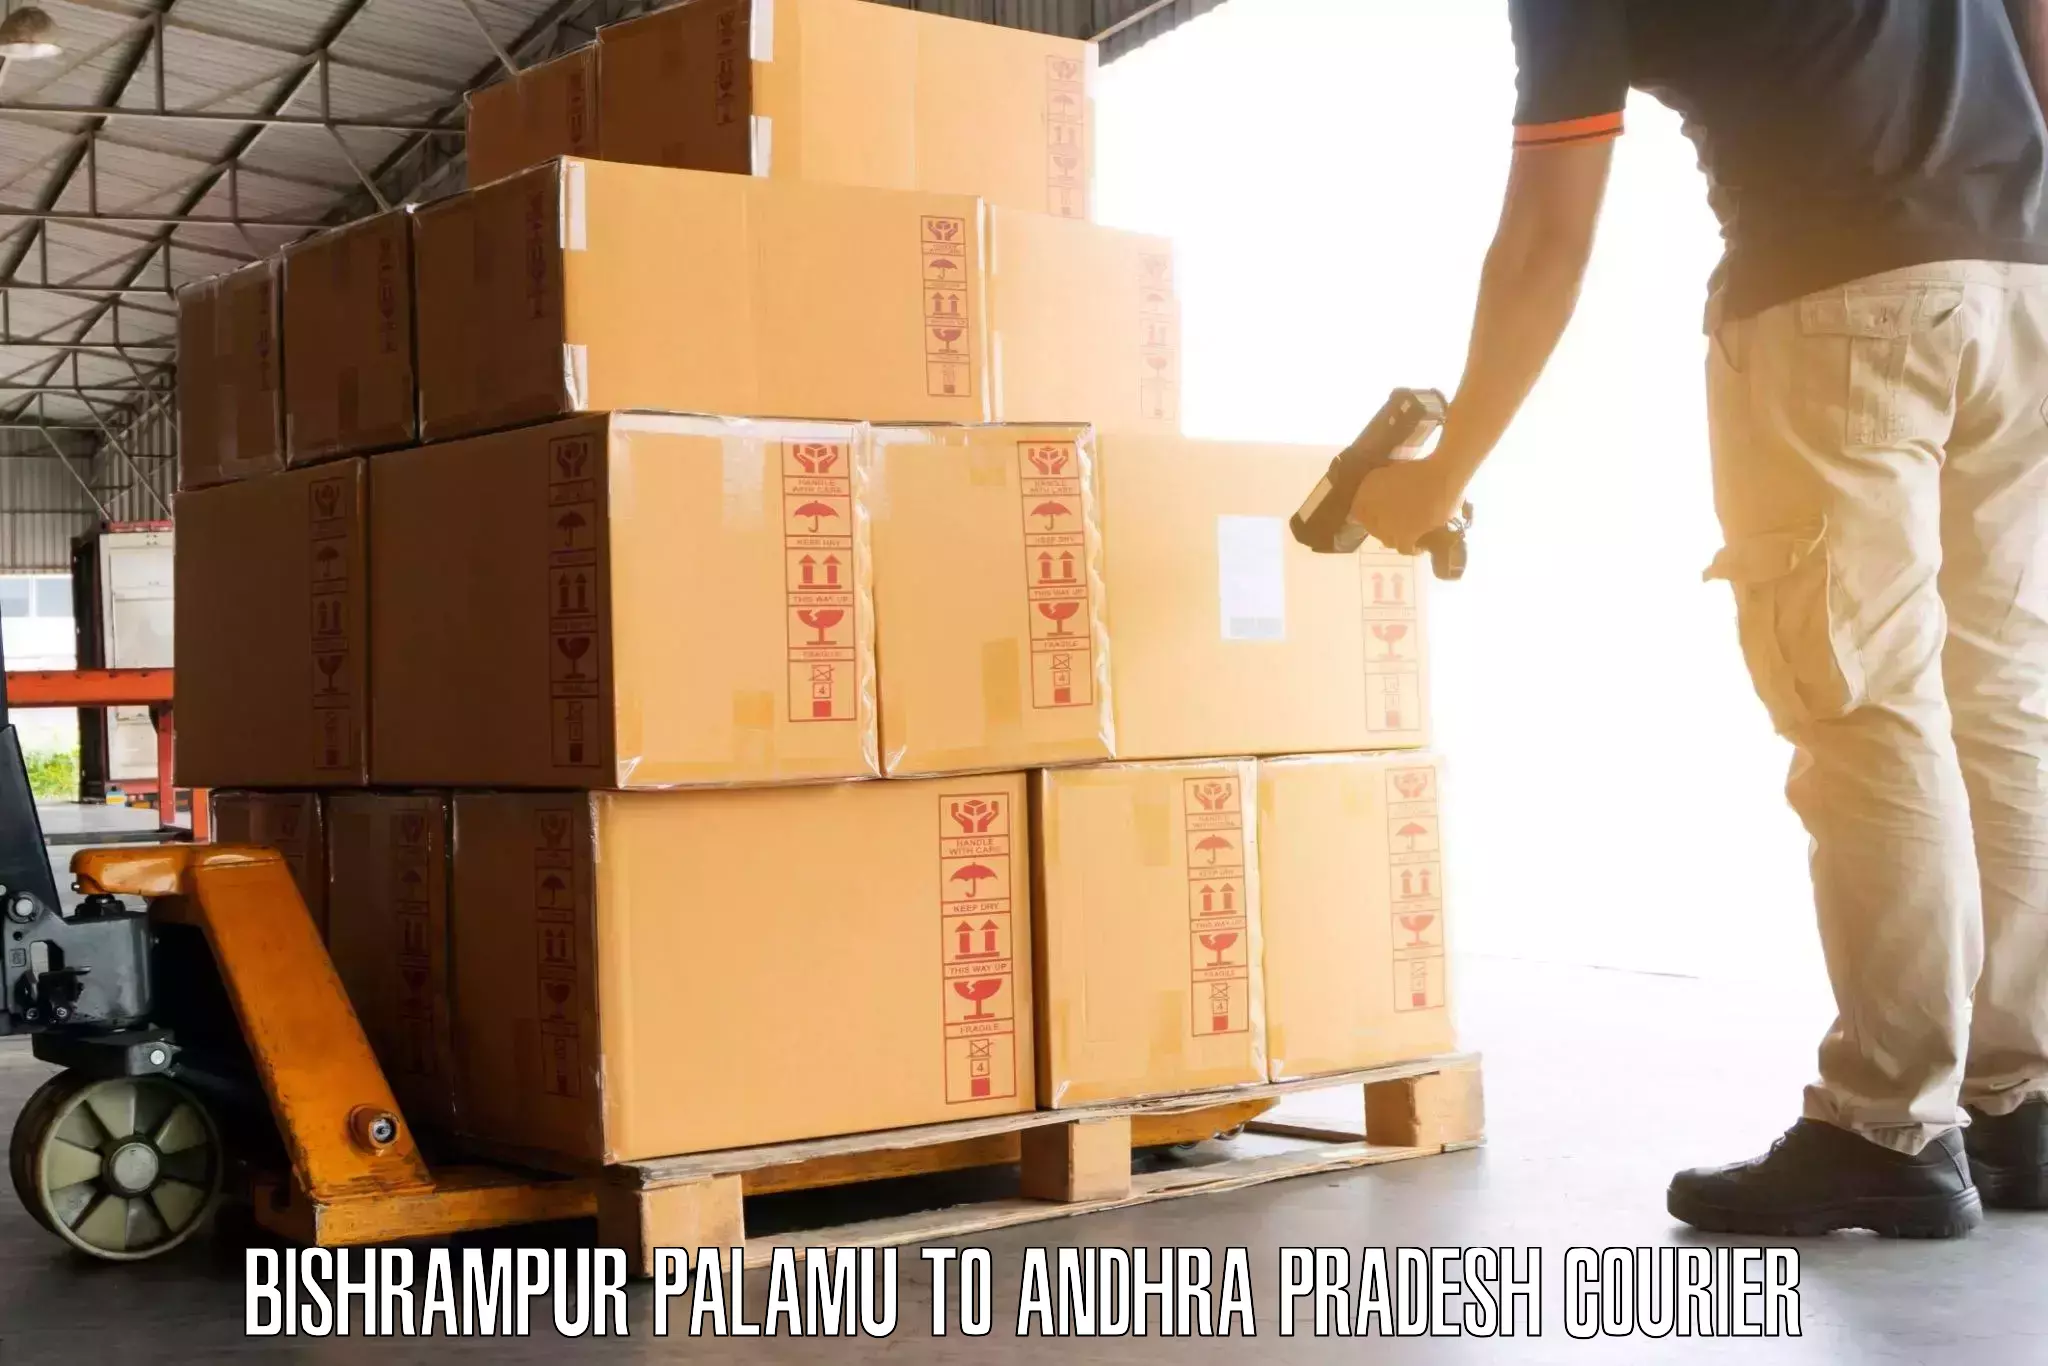 Luggage transport service Bishrampur Palamu to Amarapuram